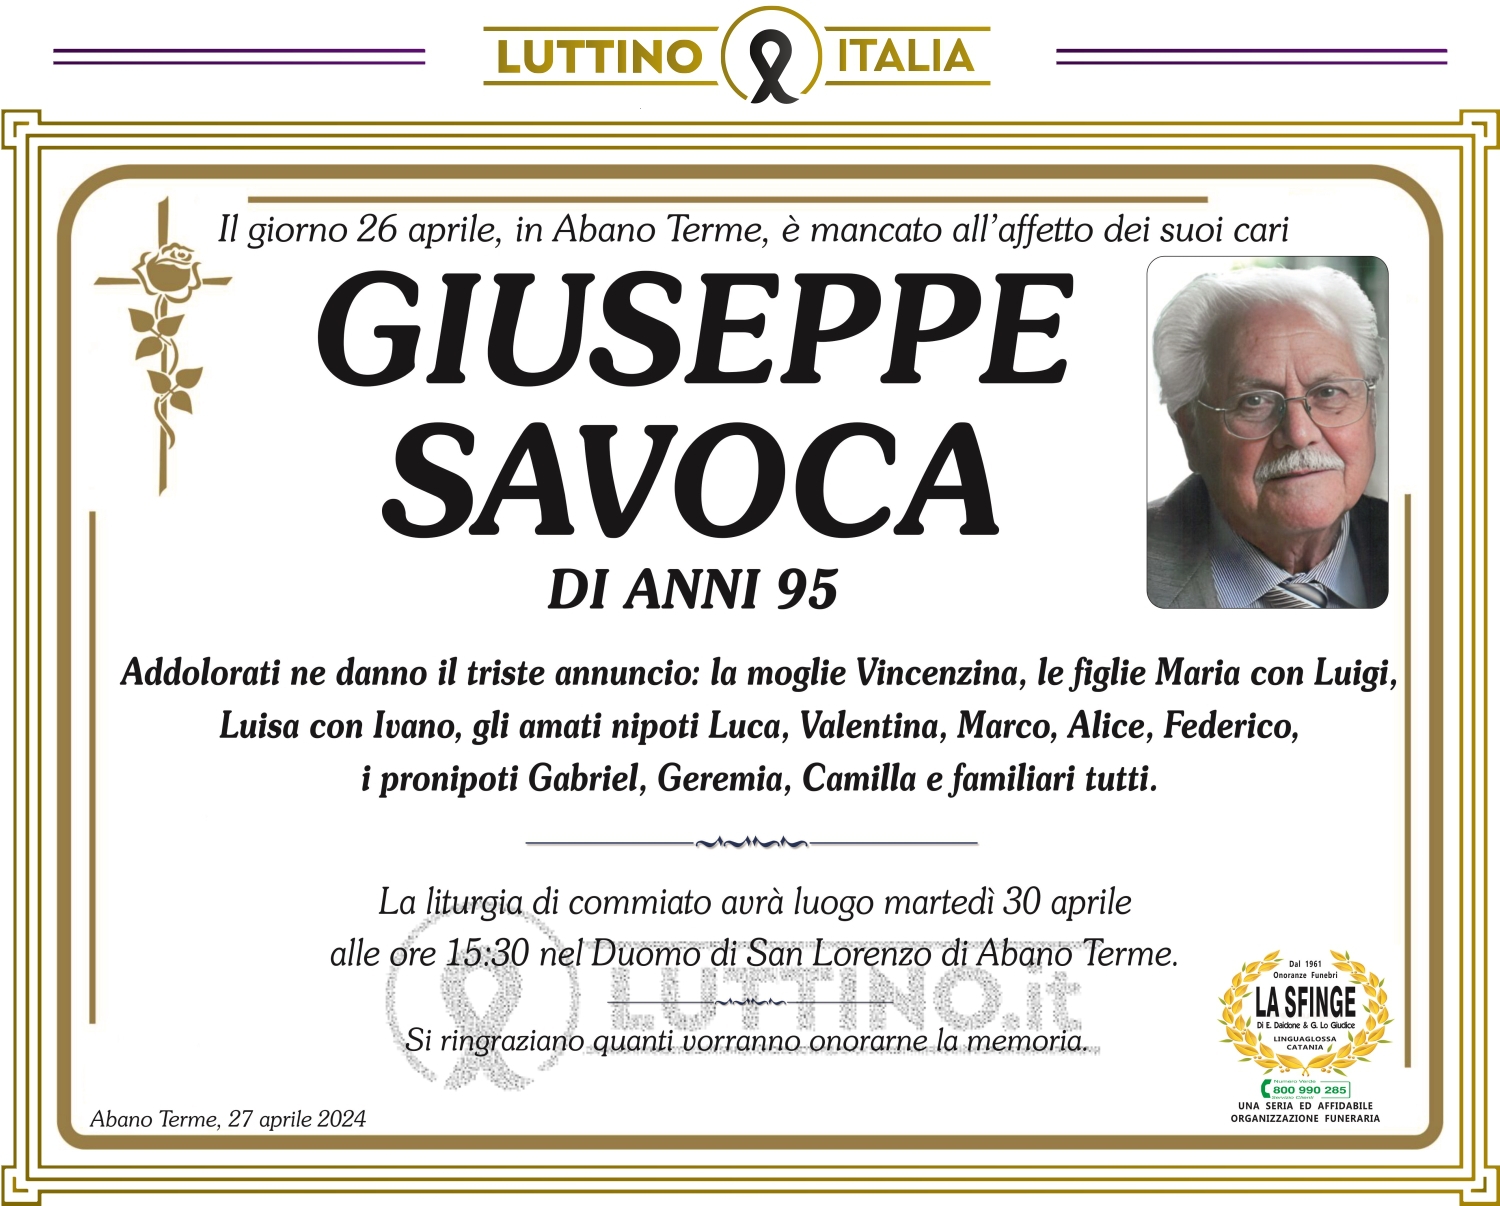 Giuseppe Savoca